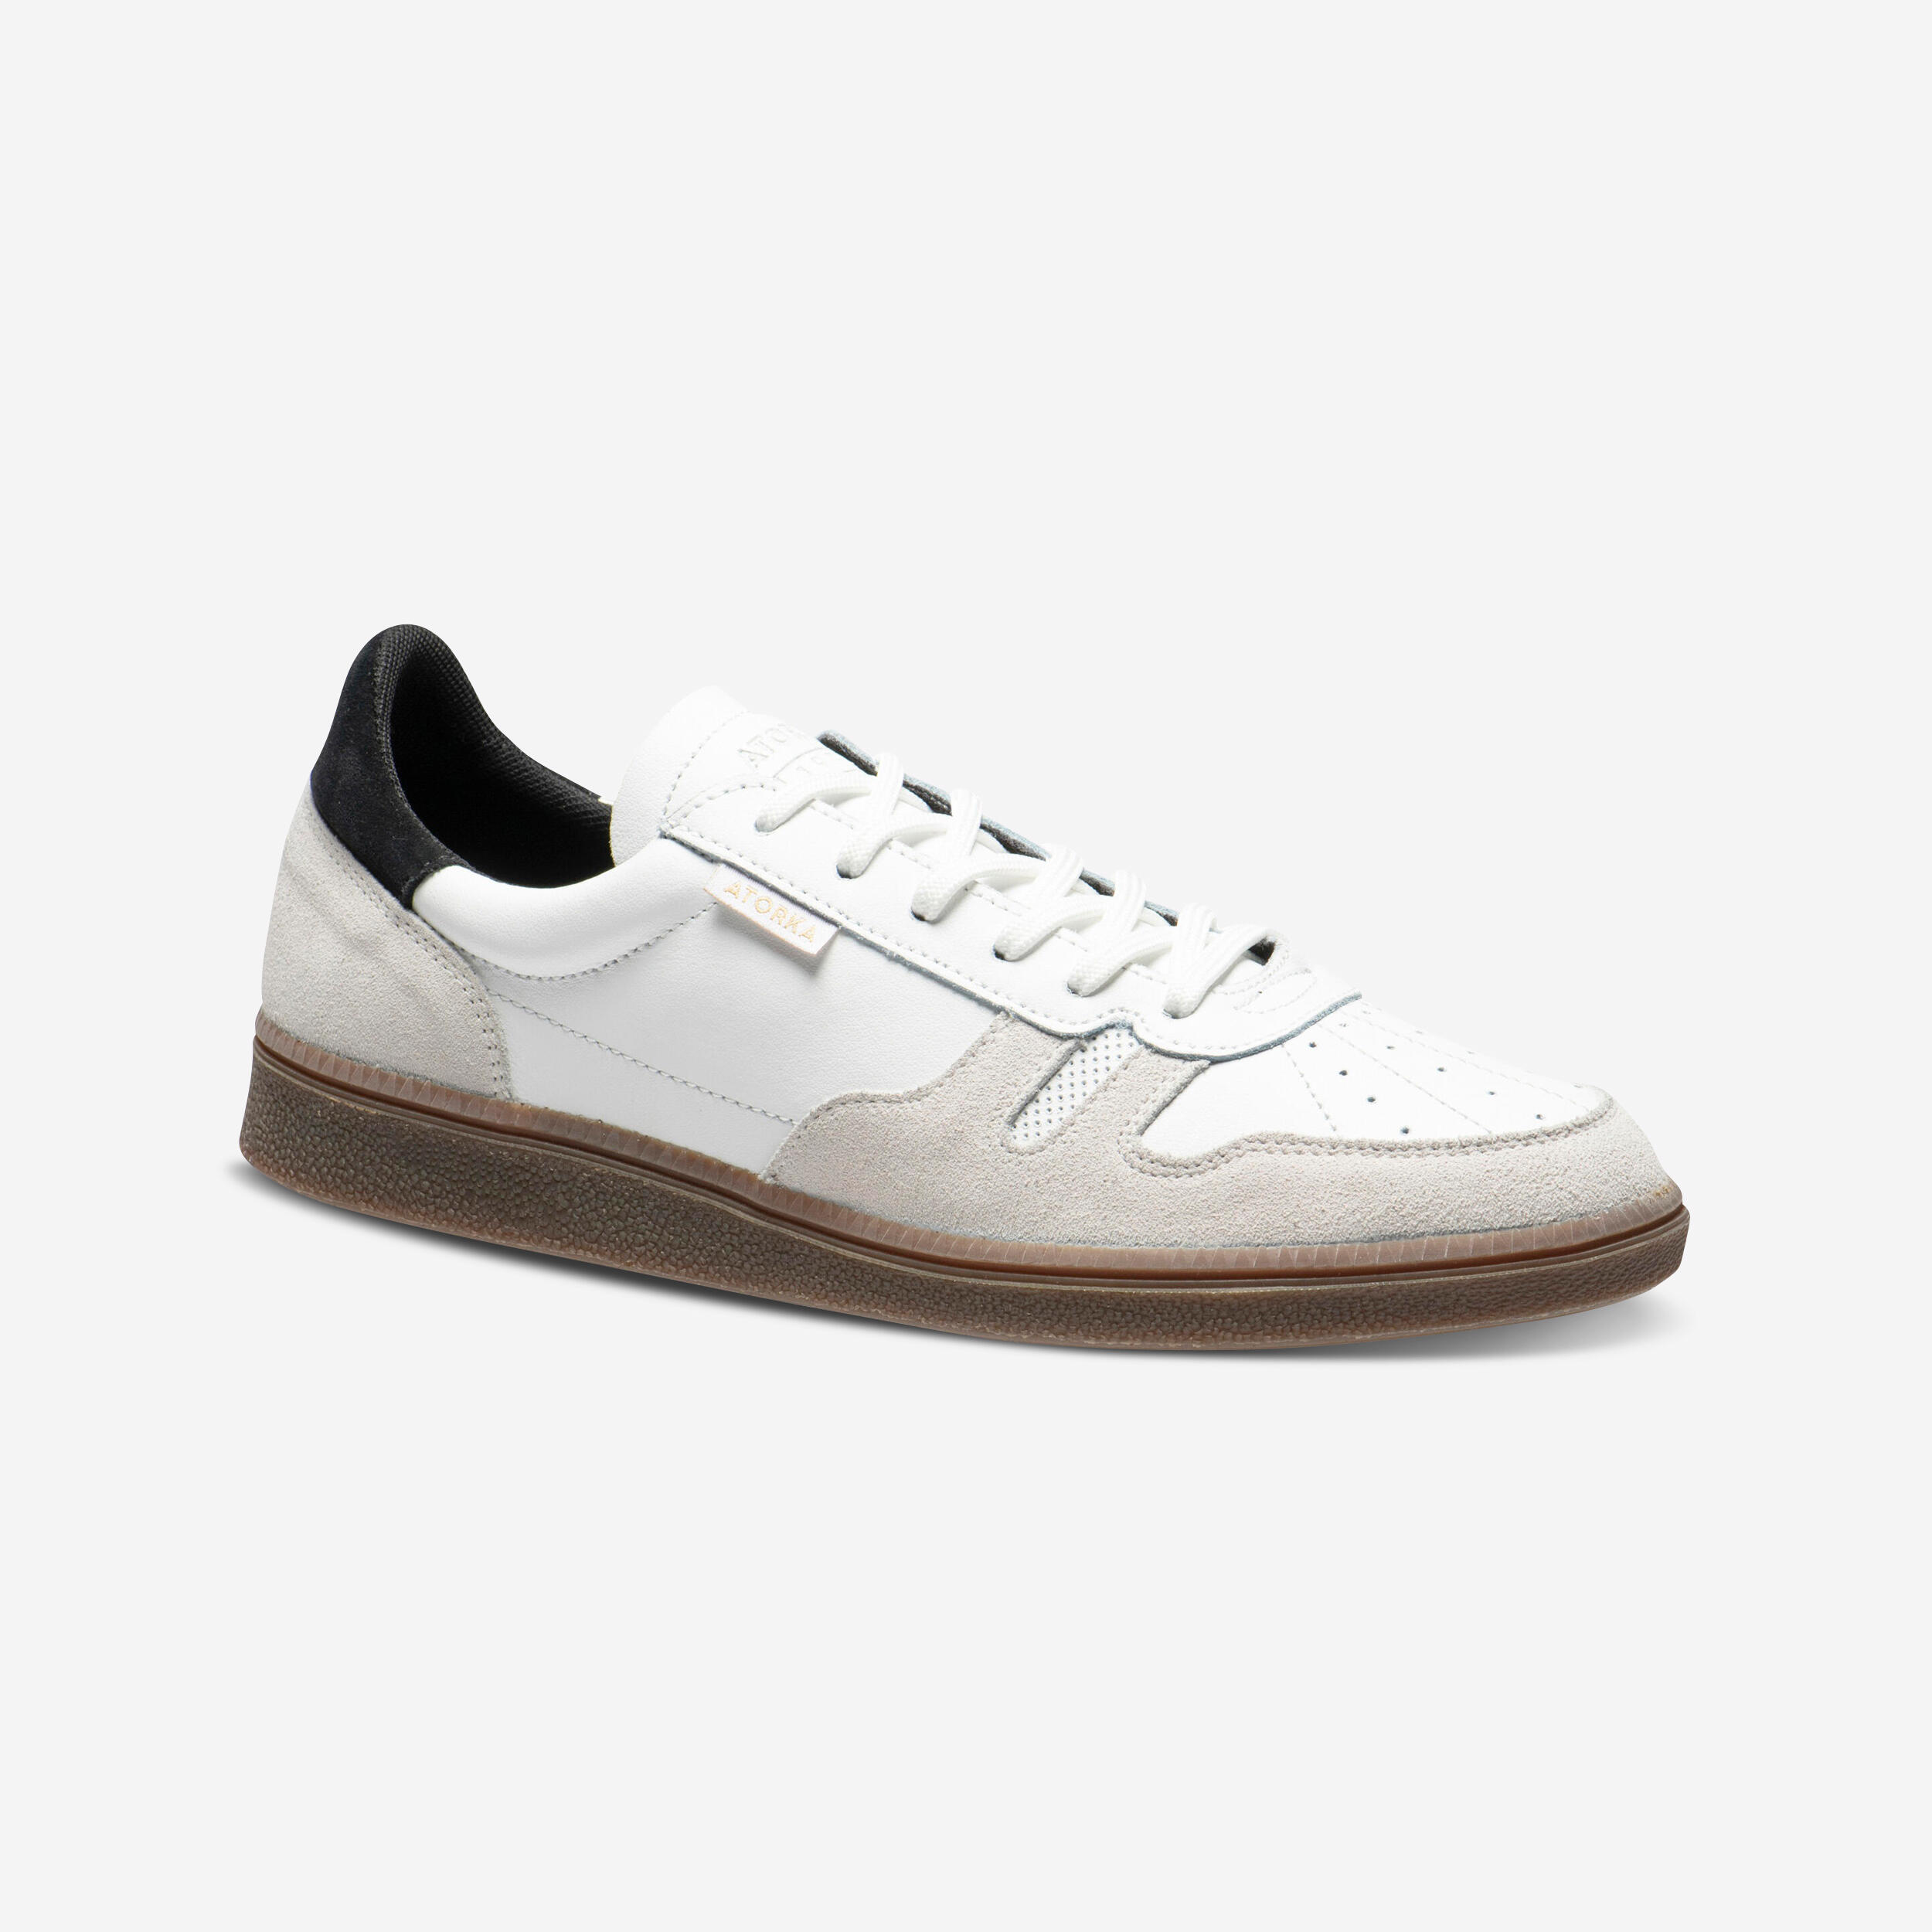 ATORKA Men's/Women's Handball Goalkeeper Shoes GK500 - White/Black